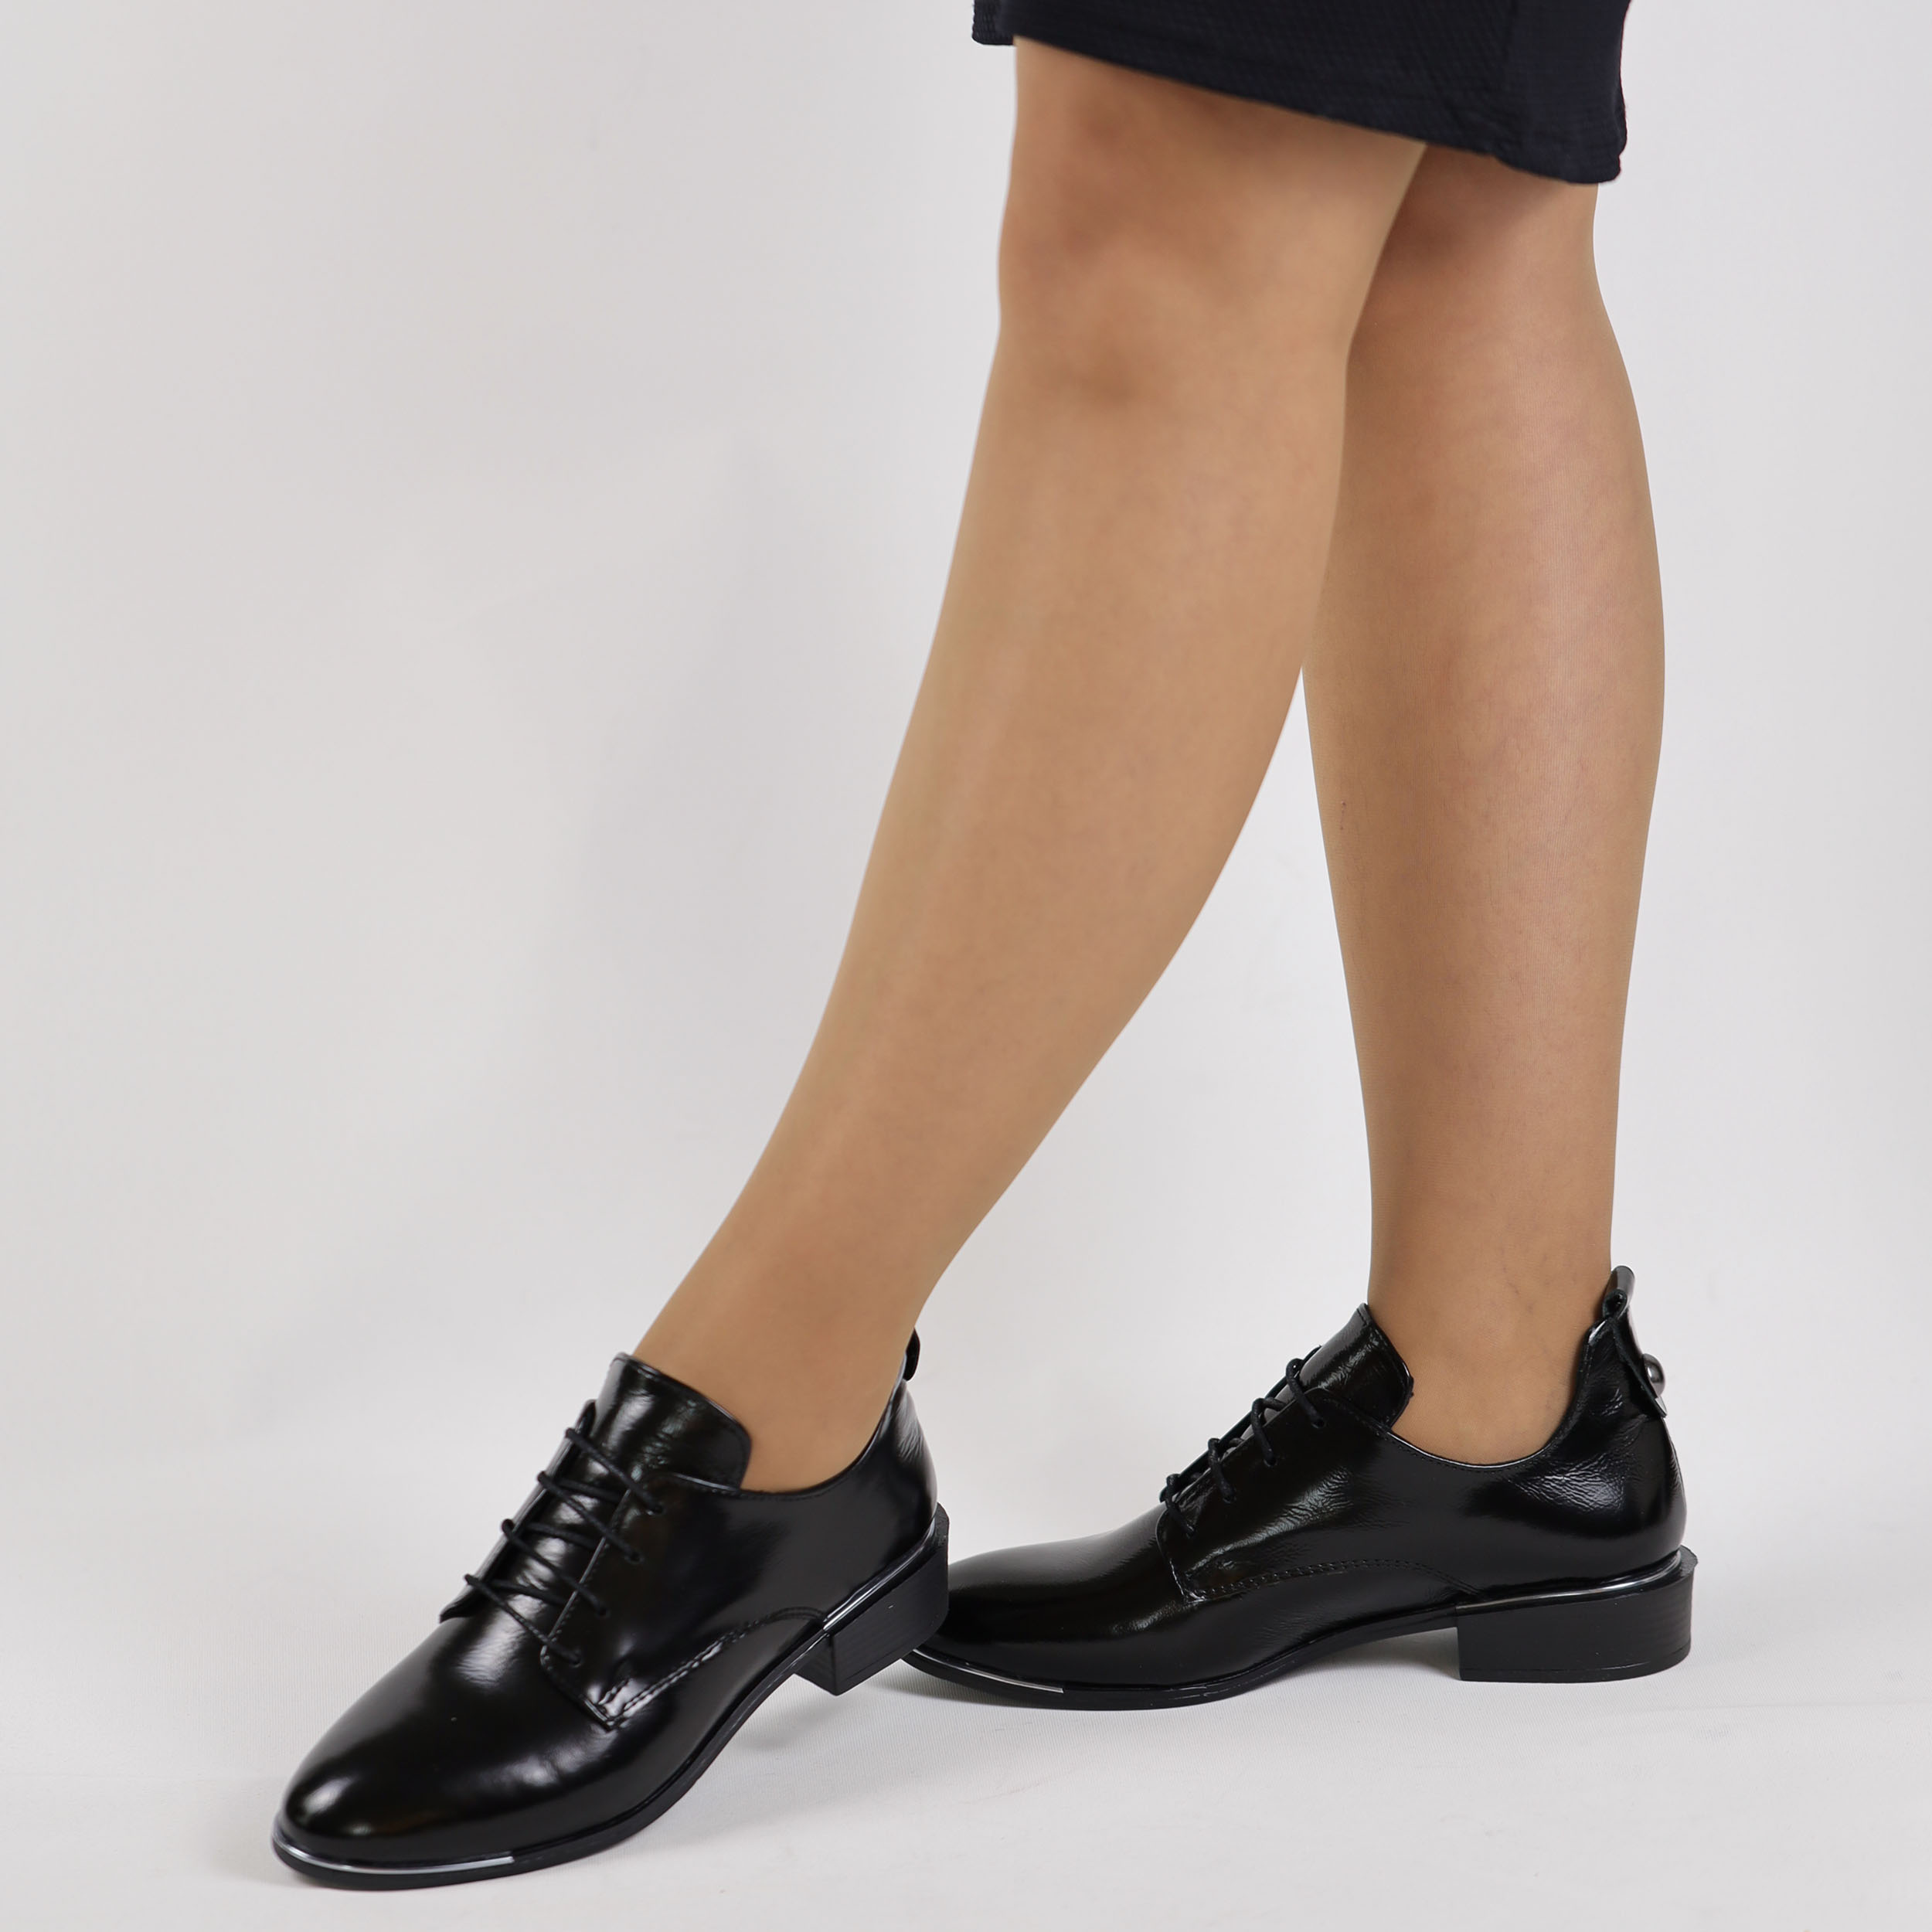 TwoEgoist Kadın Hakiki Kırışık Rugan Deri Günlük Klasik Kısa Topuklu Rahat Ayakkabı, Renk: Siyah, Beden: 37